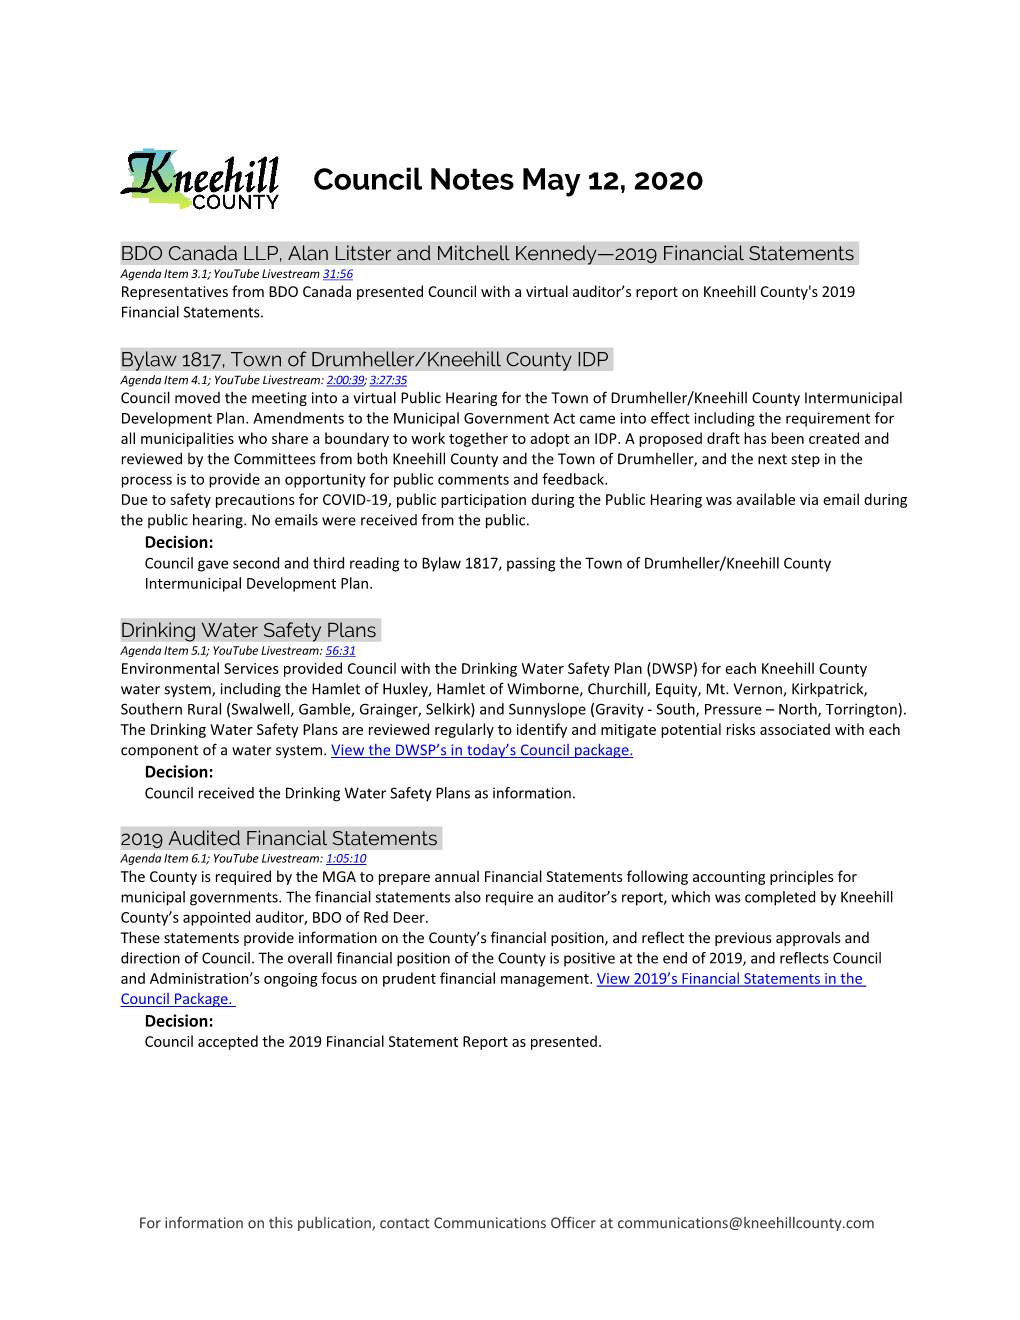 May 12, 2020, Council Notes